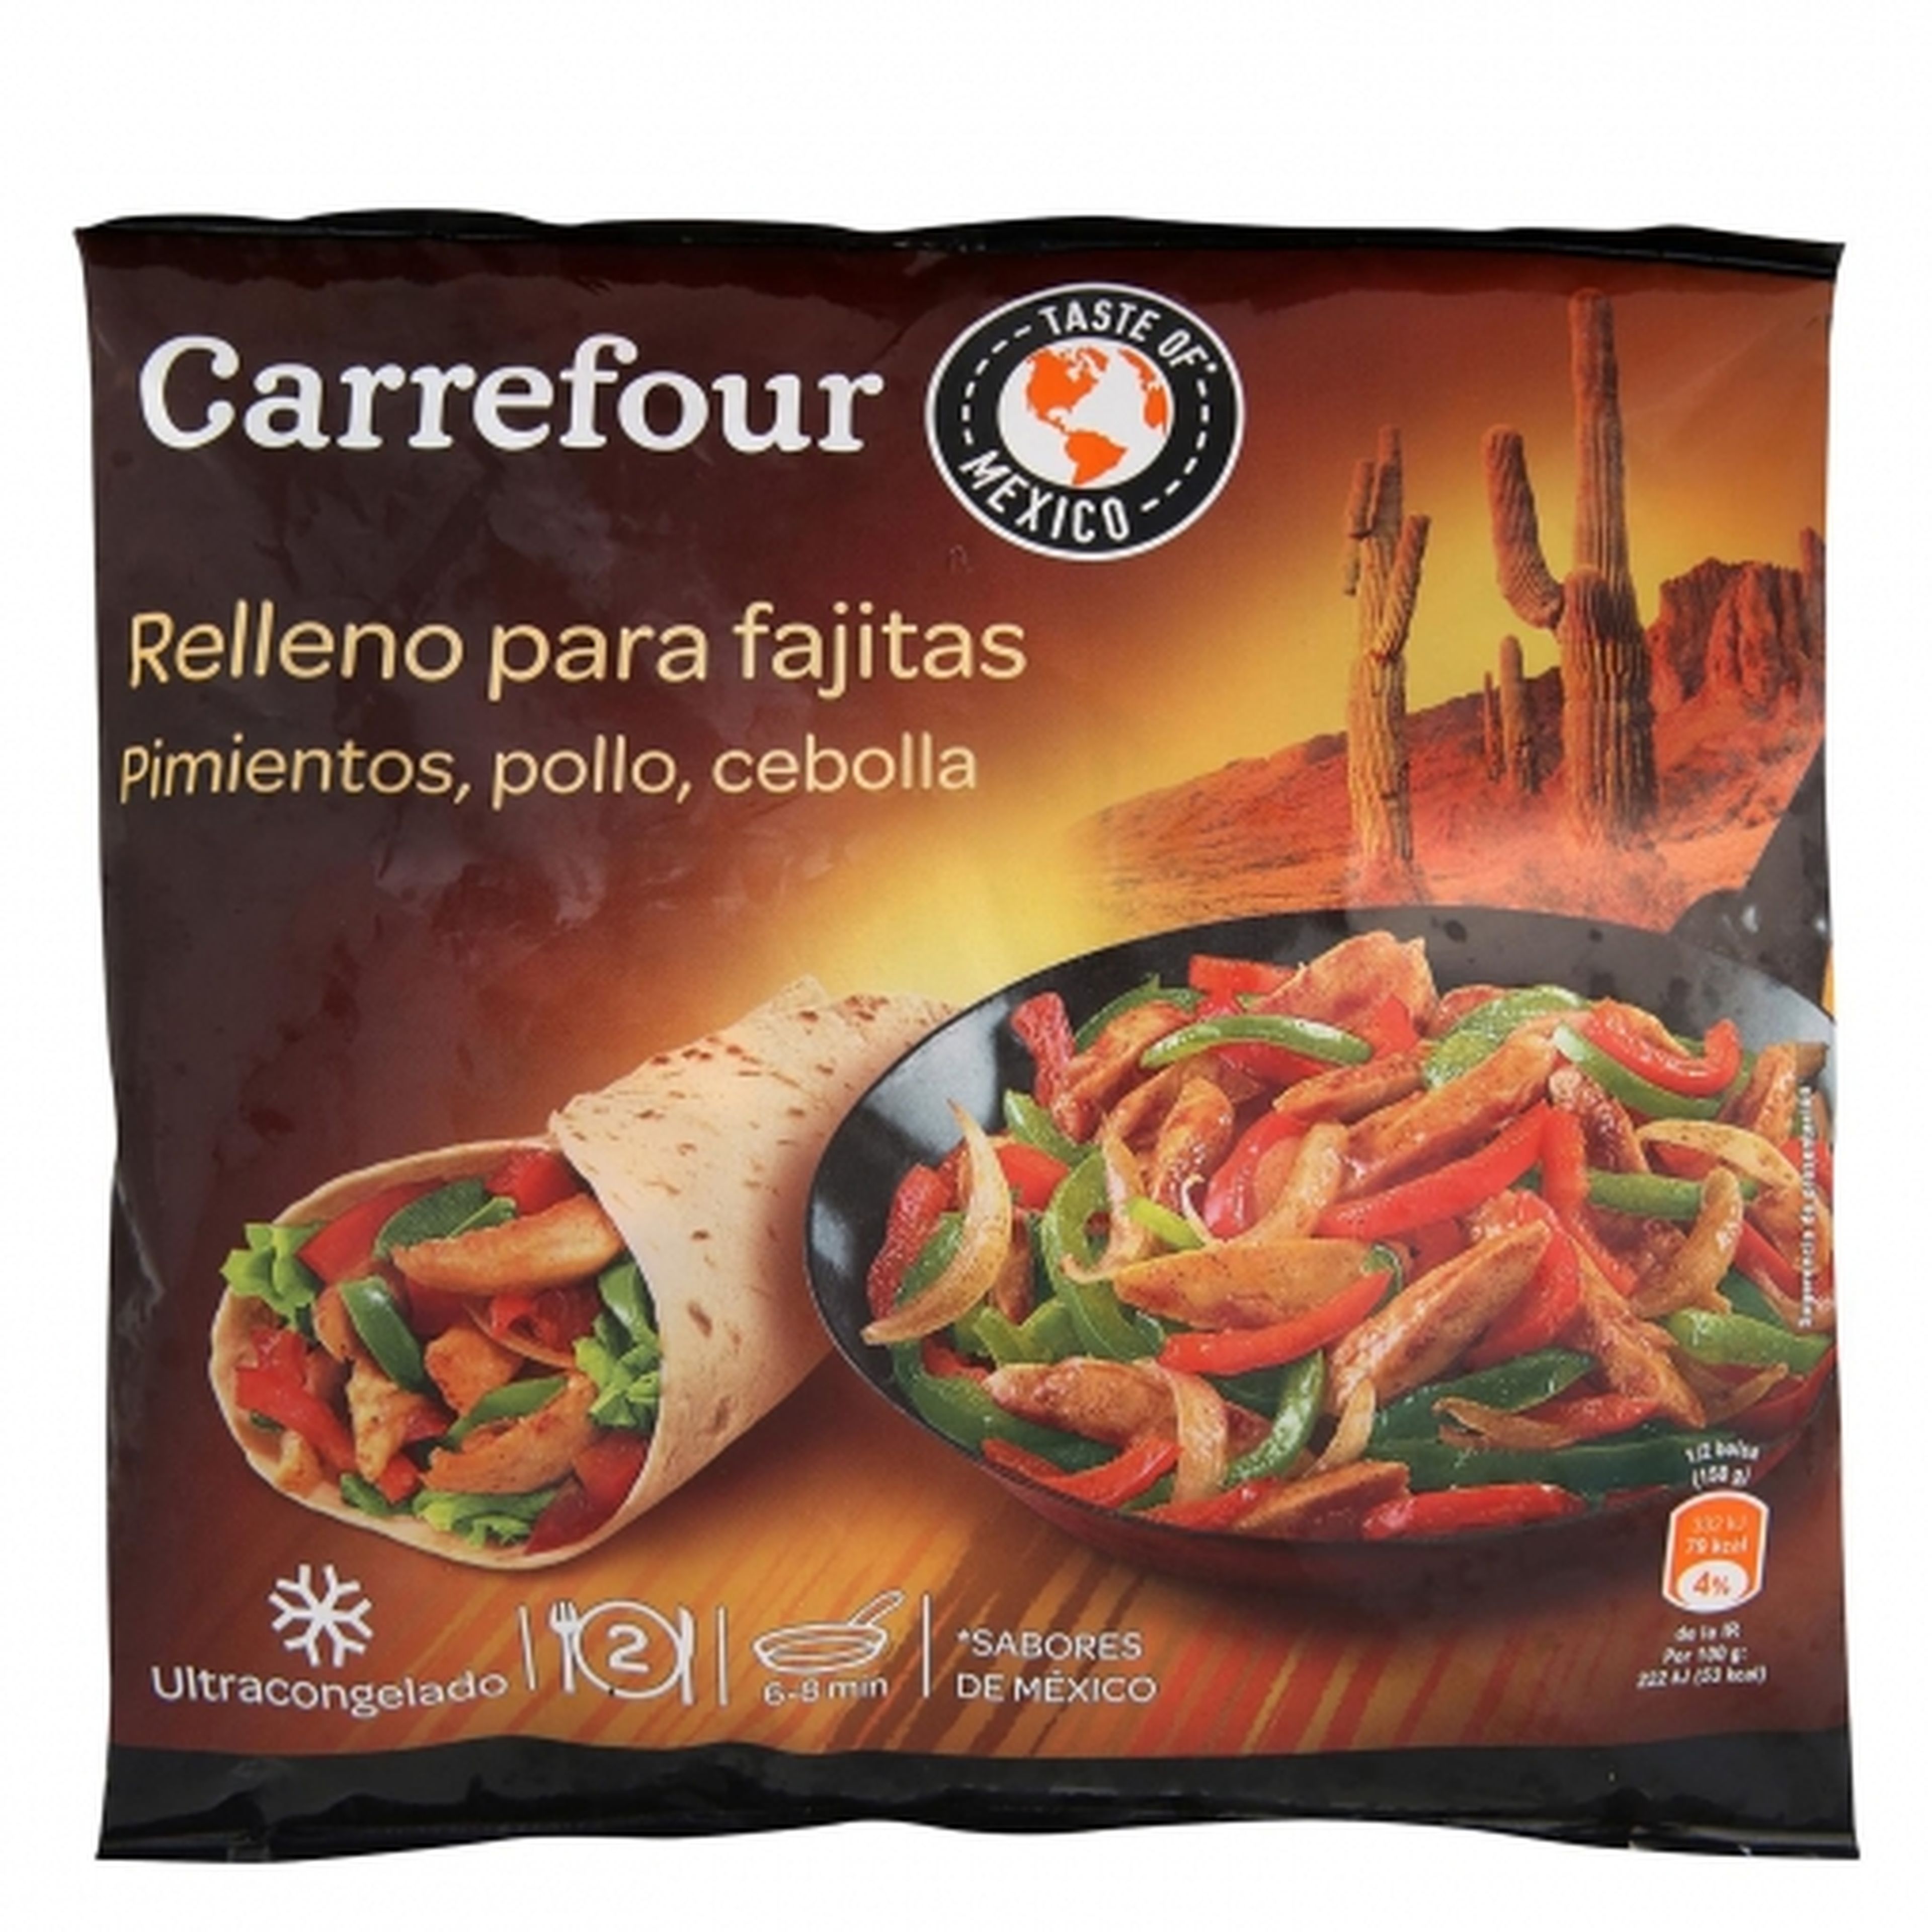 Relleno para fajitas de Carrefour